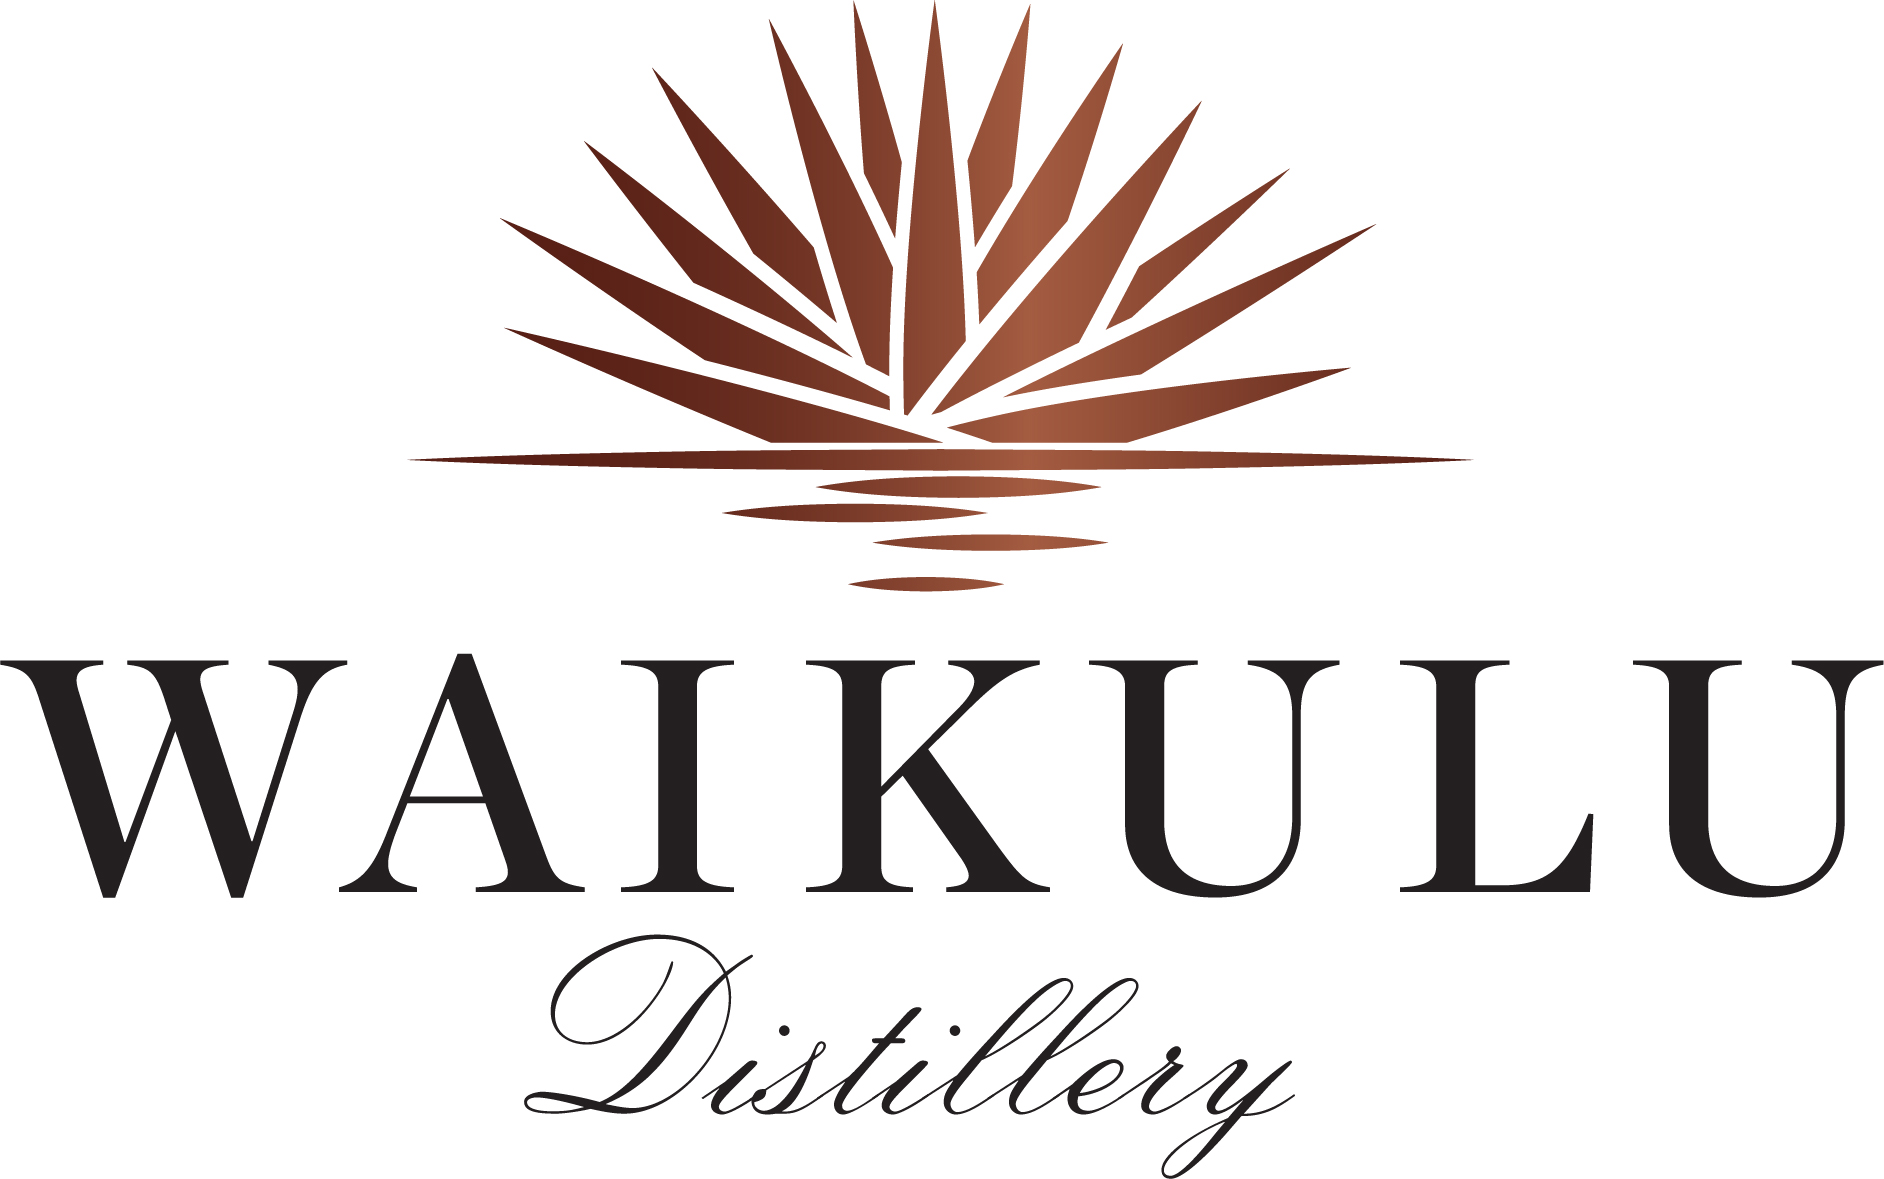 Waikulu Distillery